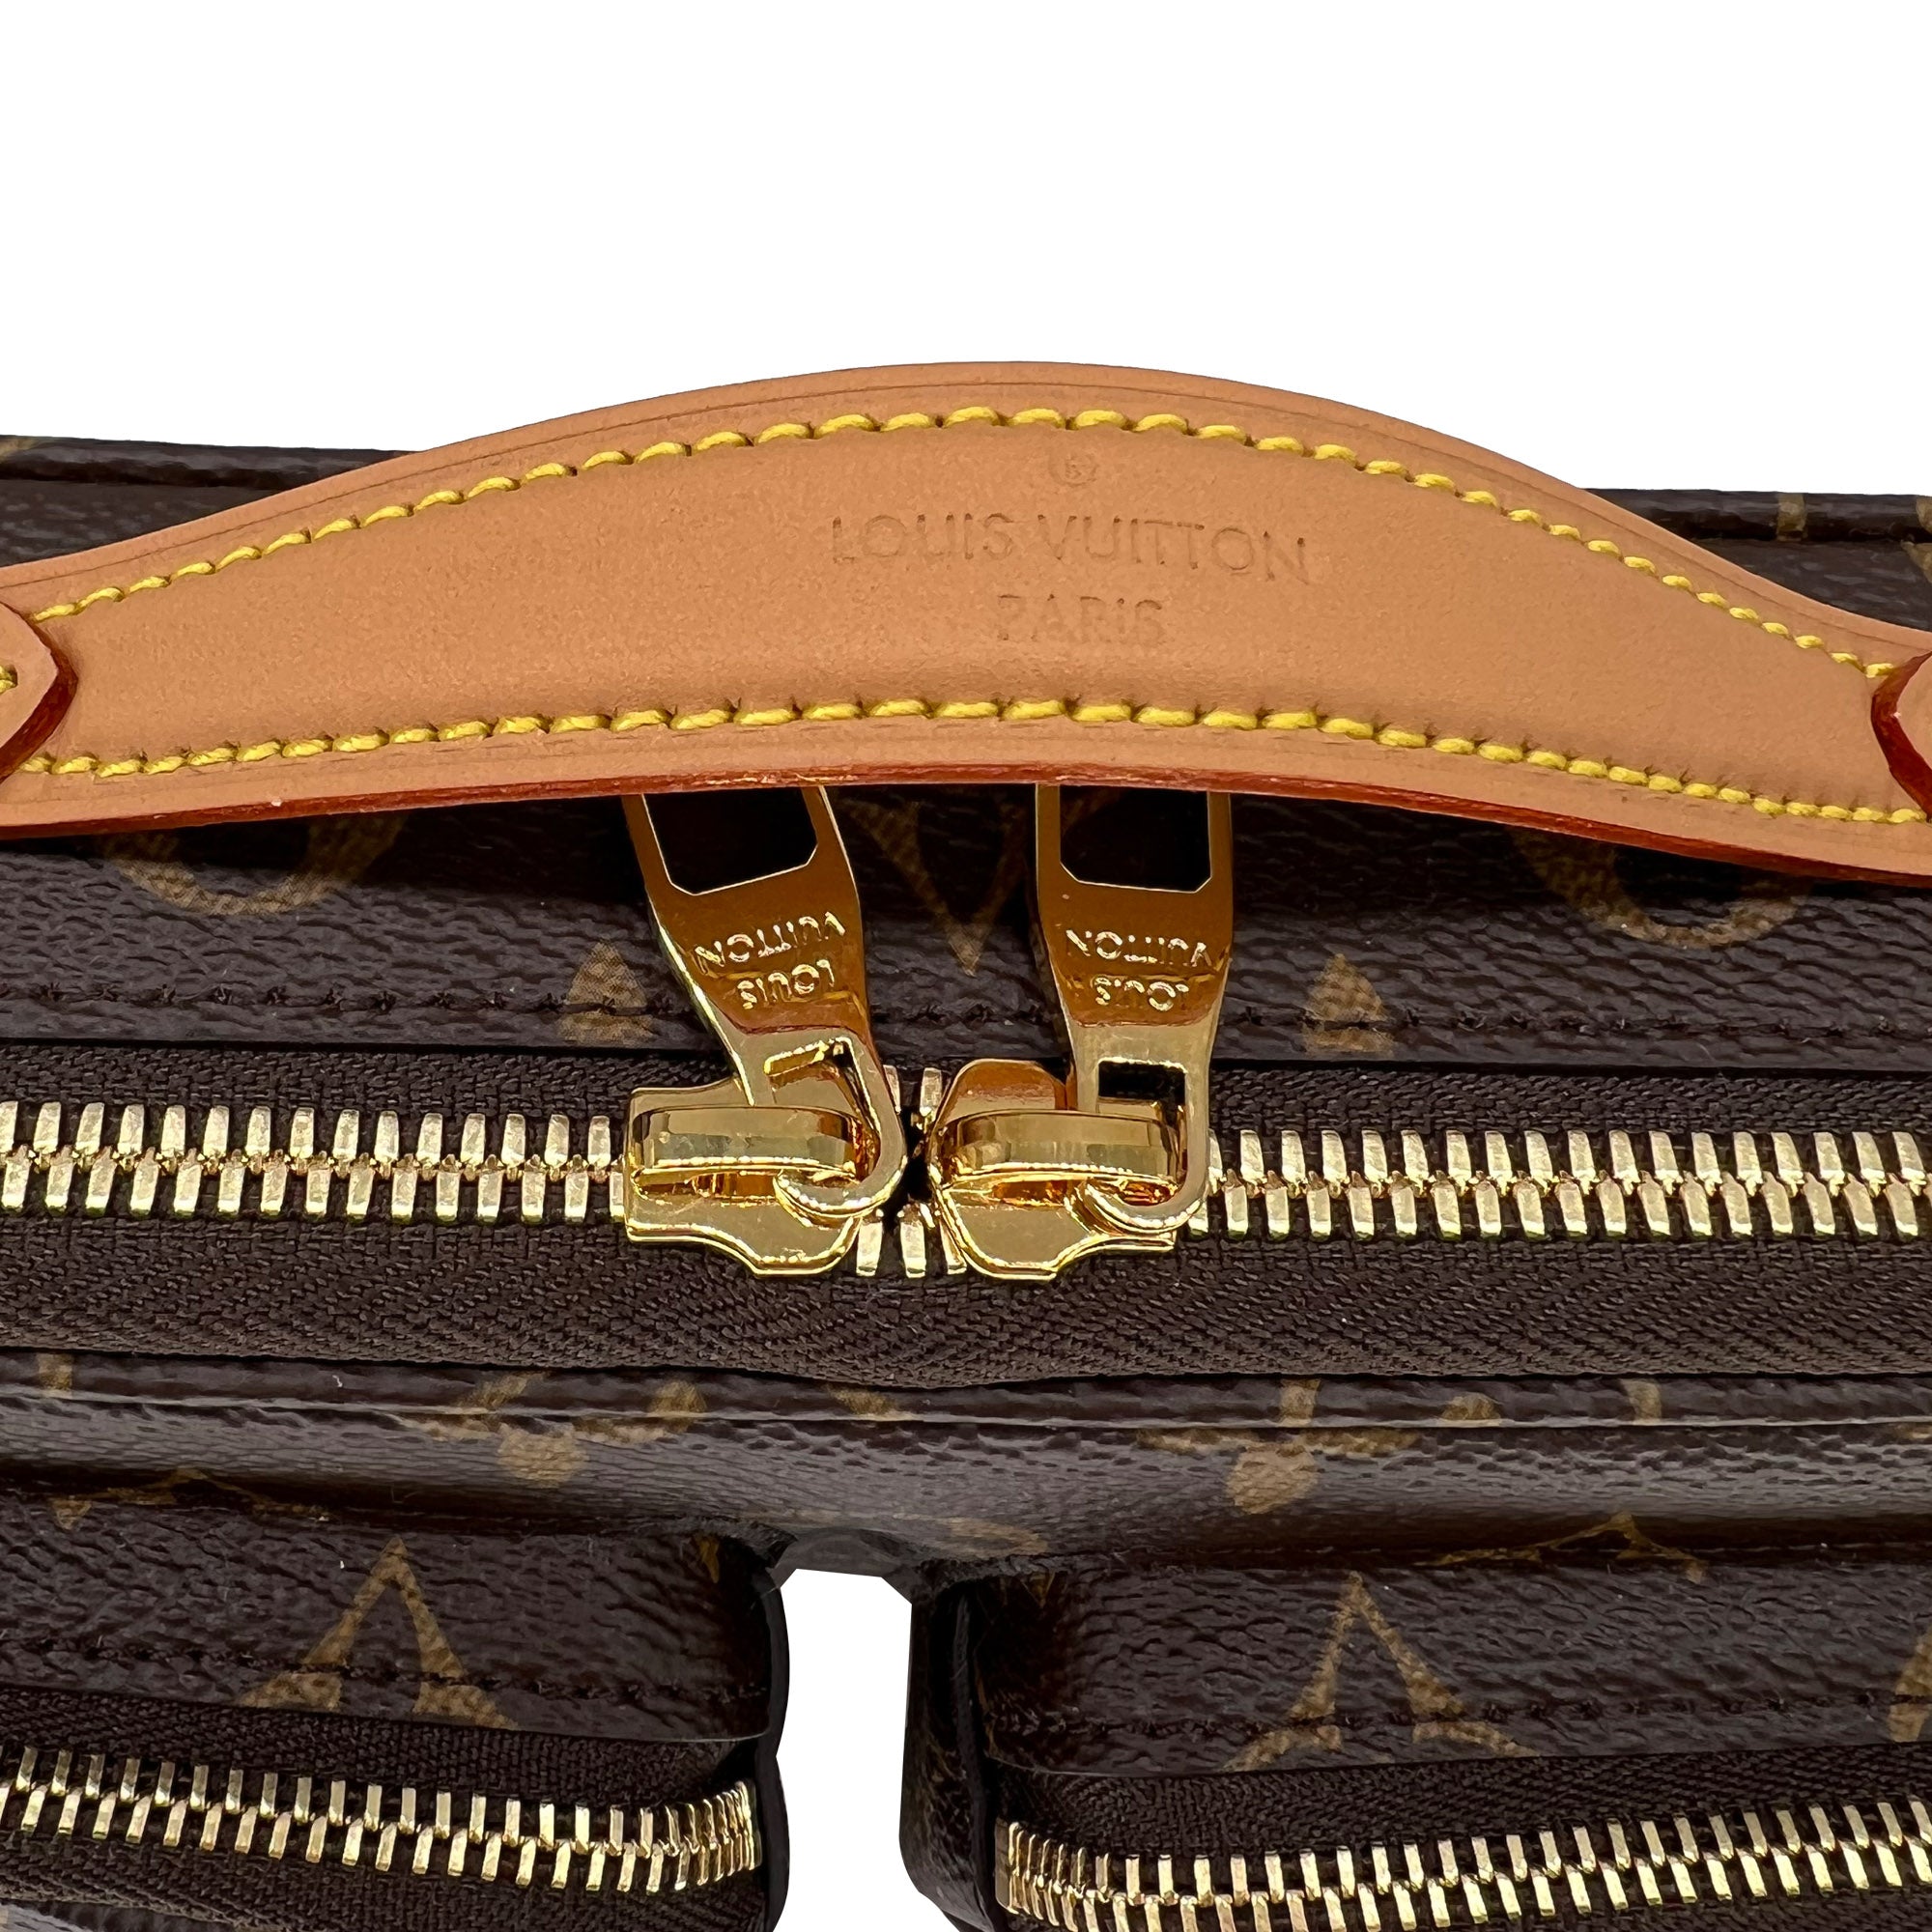 Louis Vuitton Utility Crossbody Bag – ZAK BAGS ©️